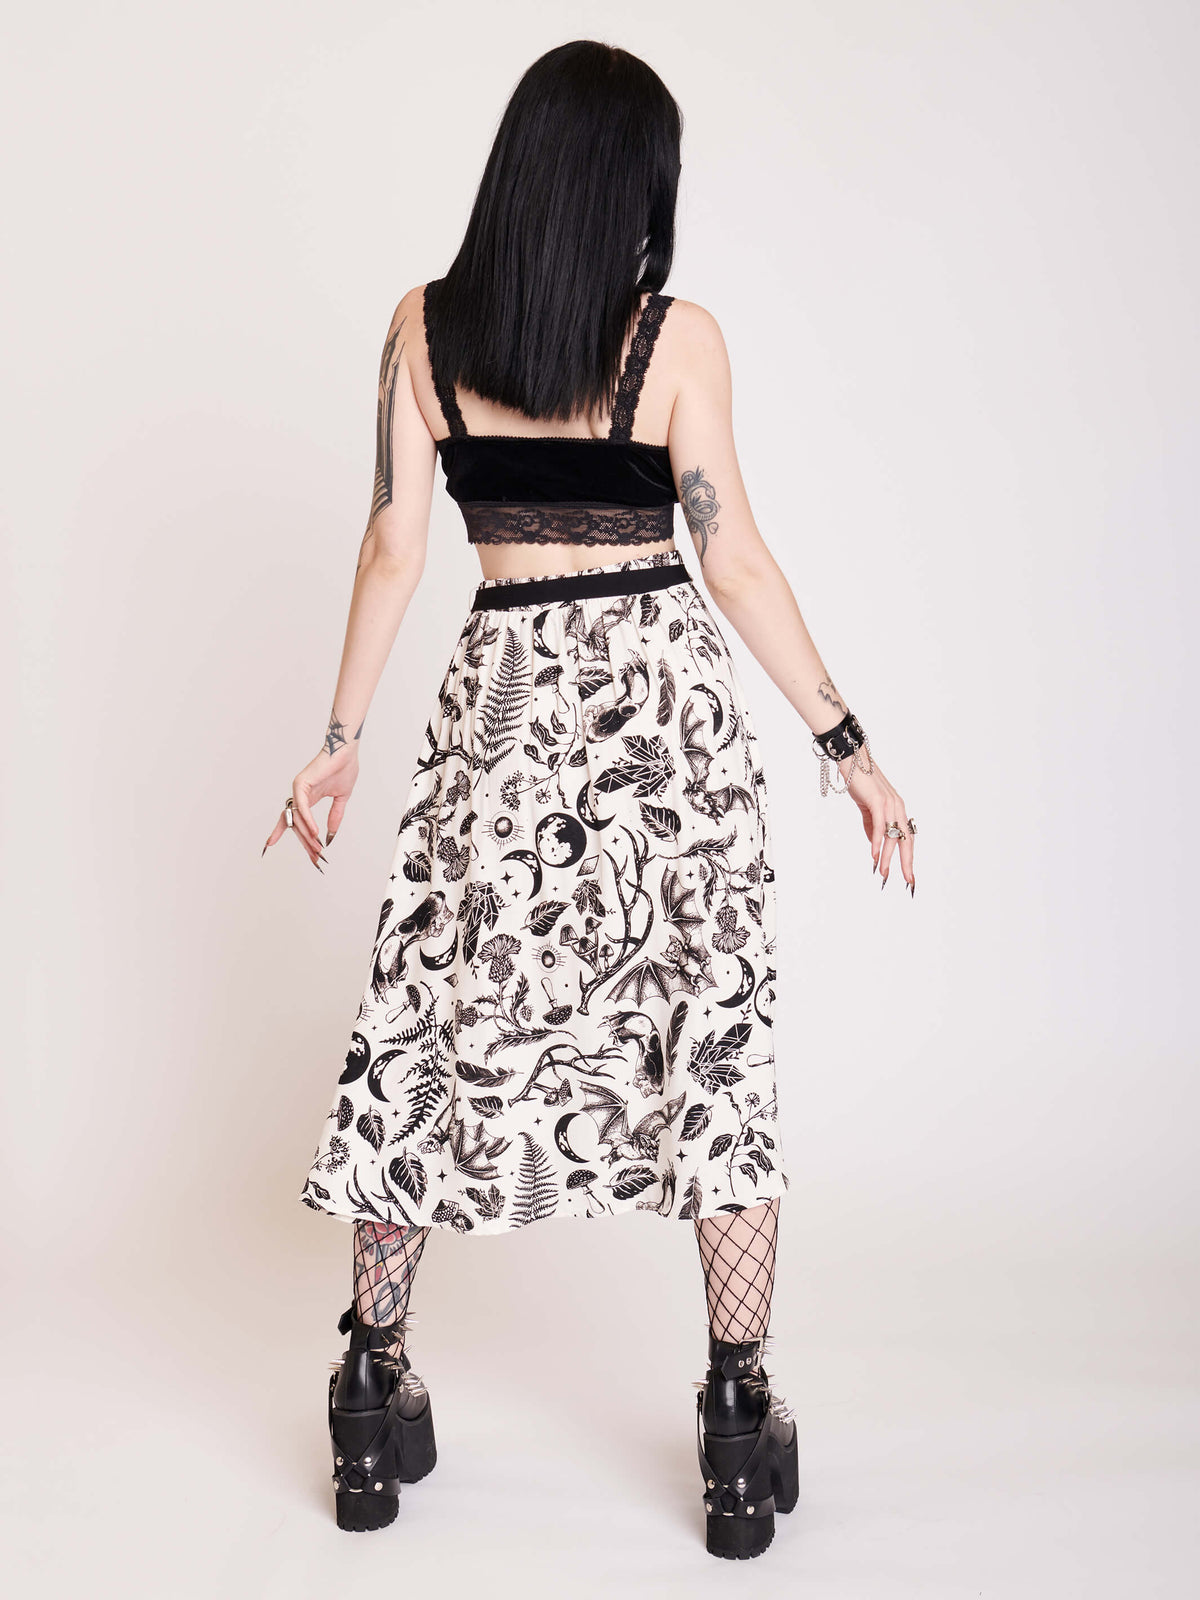 White split midi skirt with black all over pattern